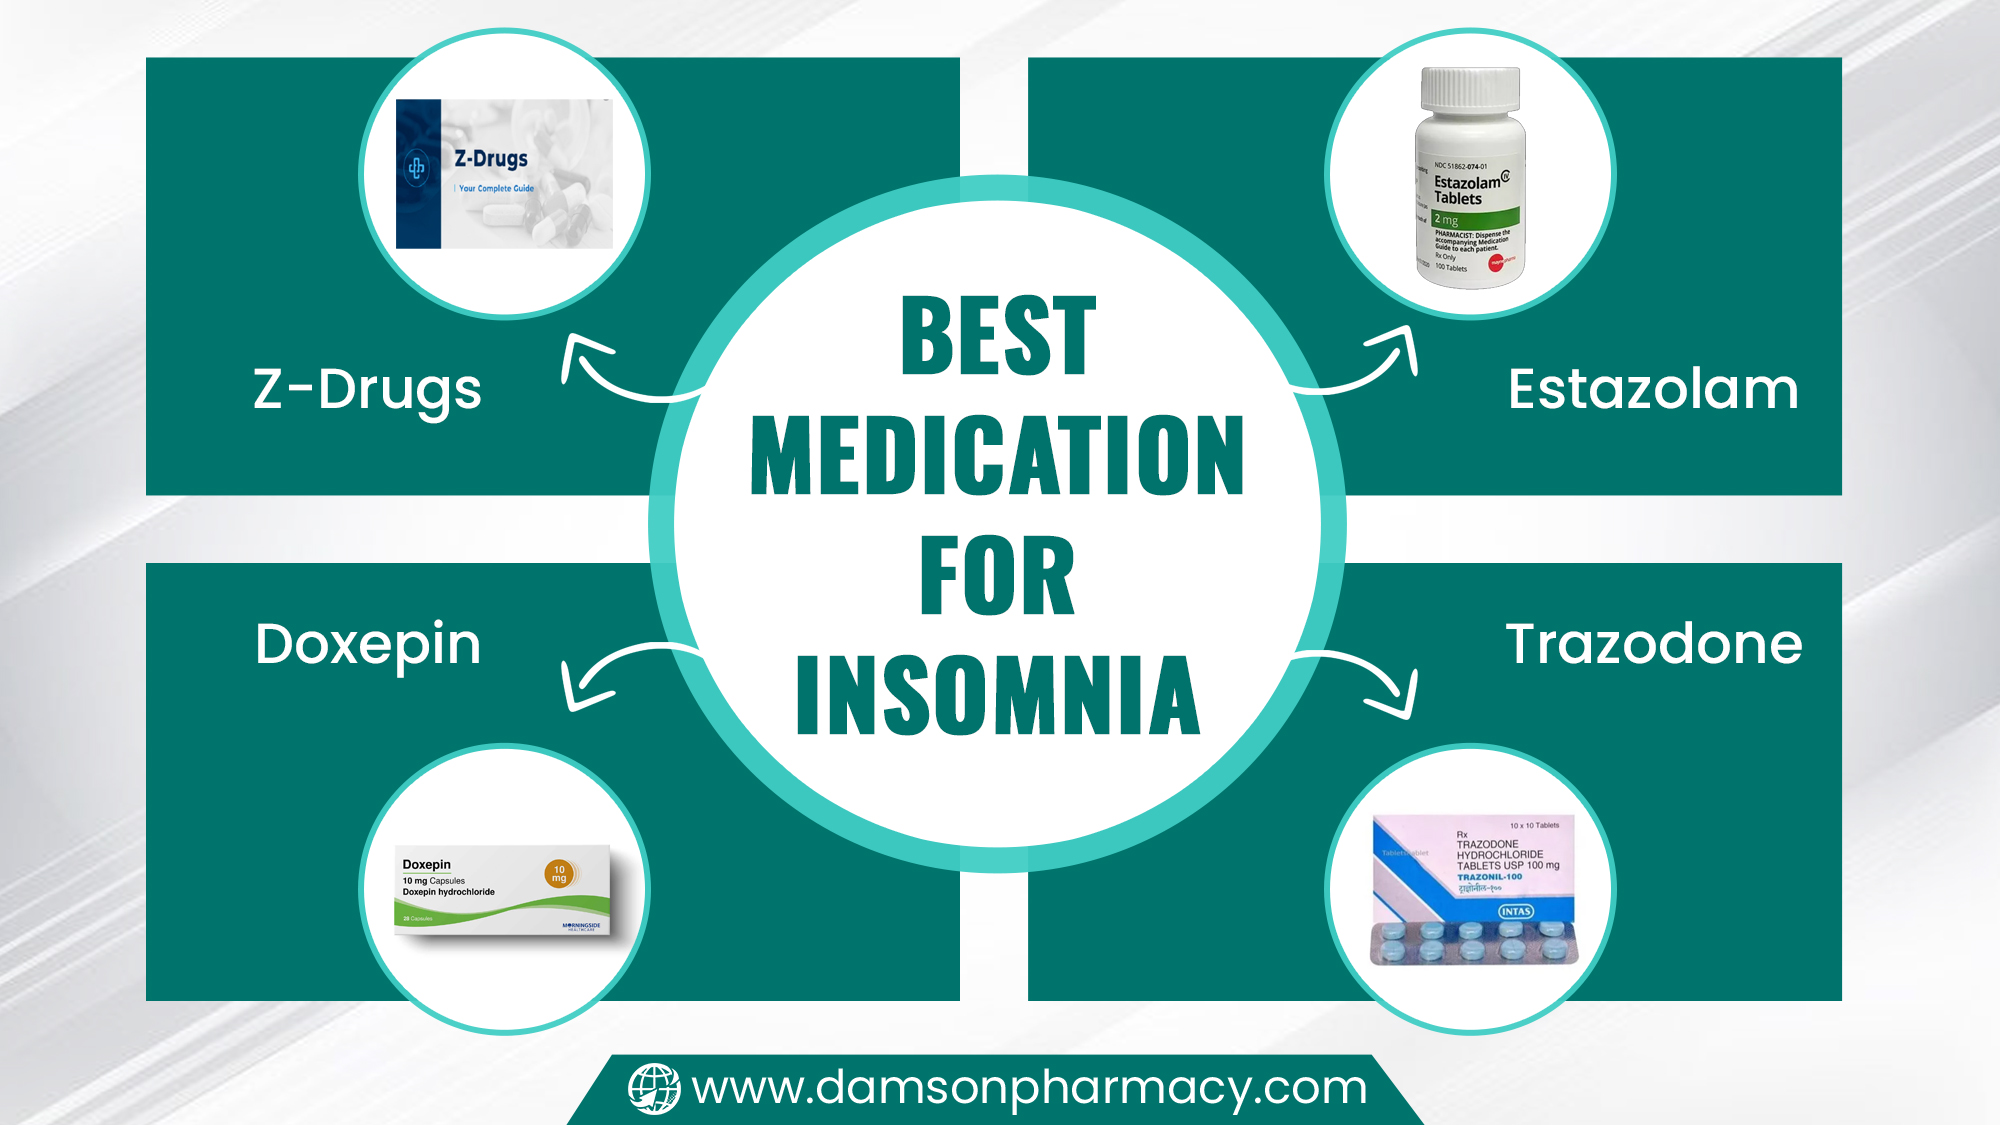 Best Medication for Insomnia